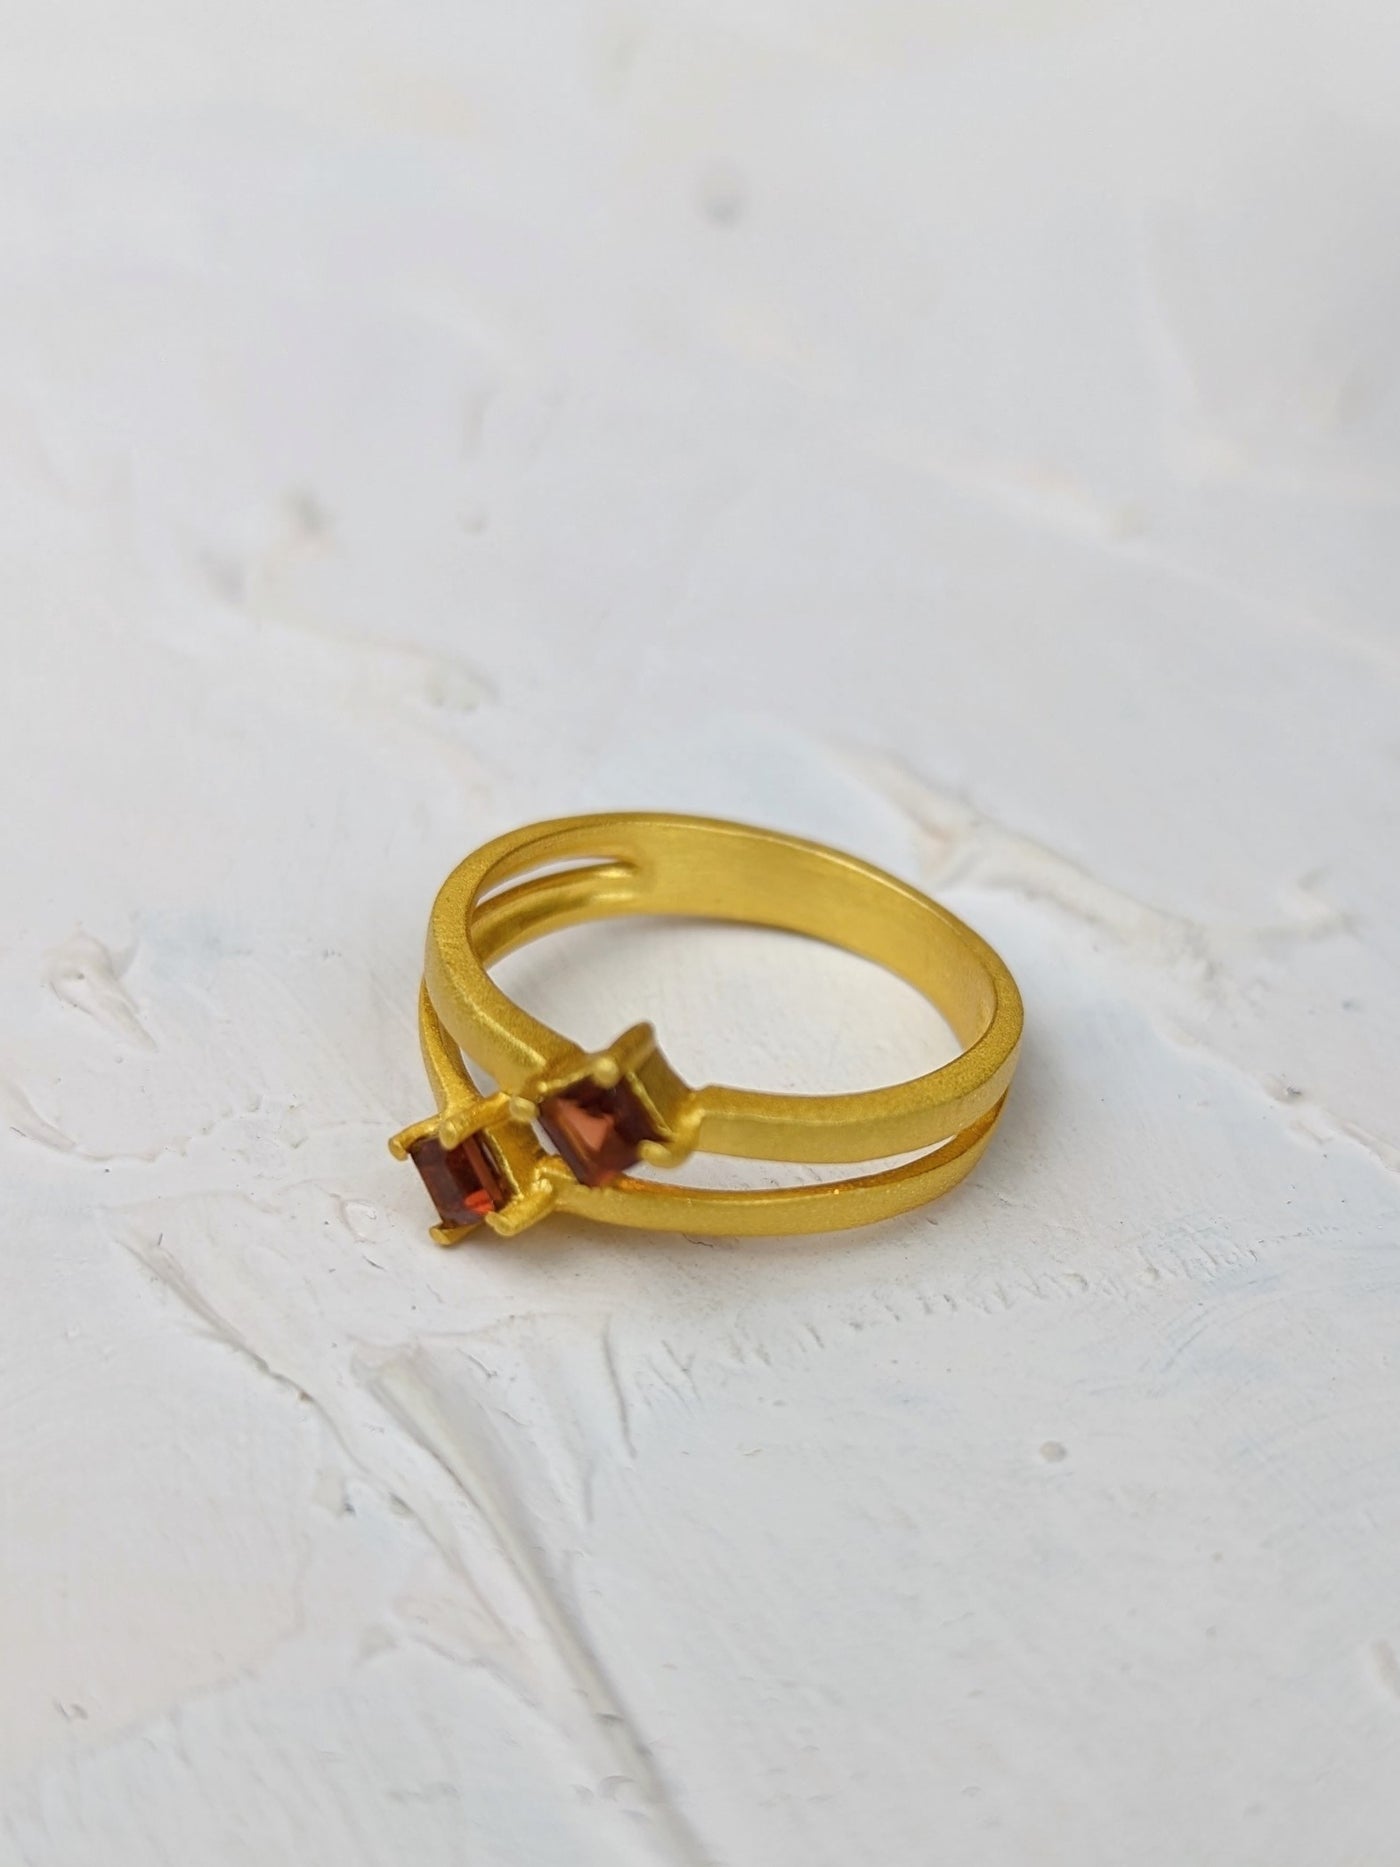 Garnet and Gold Split Shank Ring